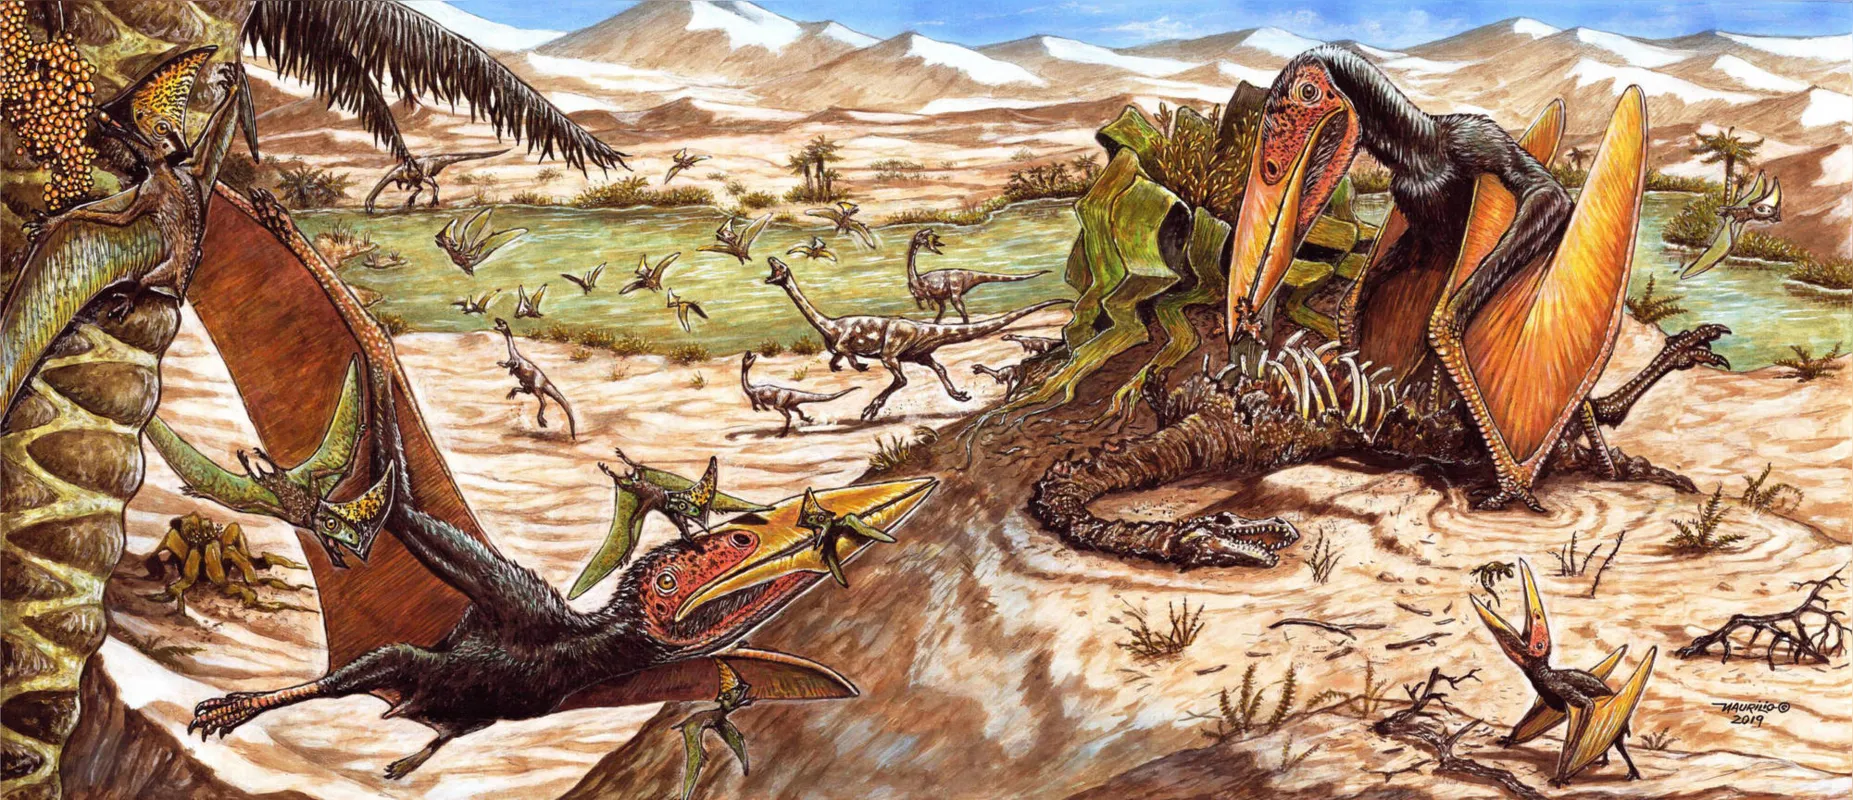 Pterossauro Keresdrakon vilsoni tinha 2,5 metros de envergadura e pesava entre 15 kg e 20 kg: hábitos carniceiros